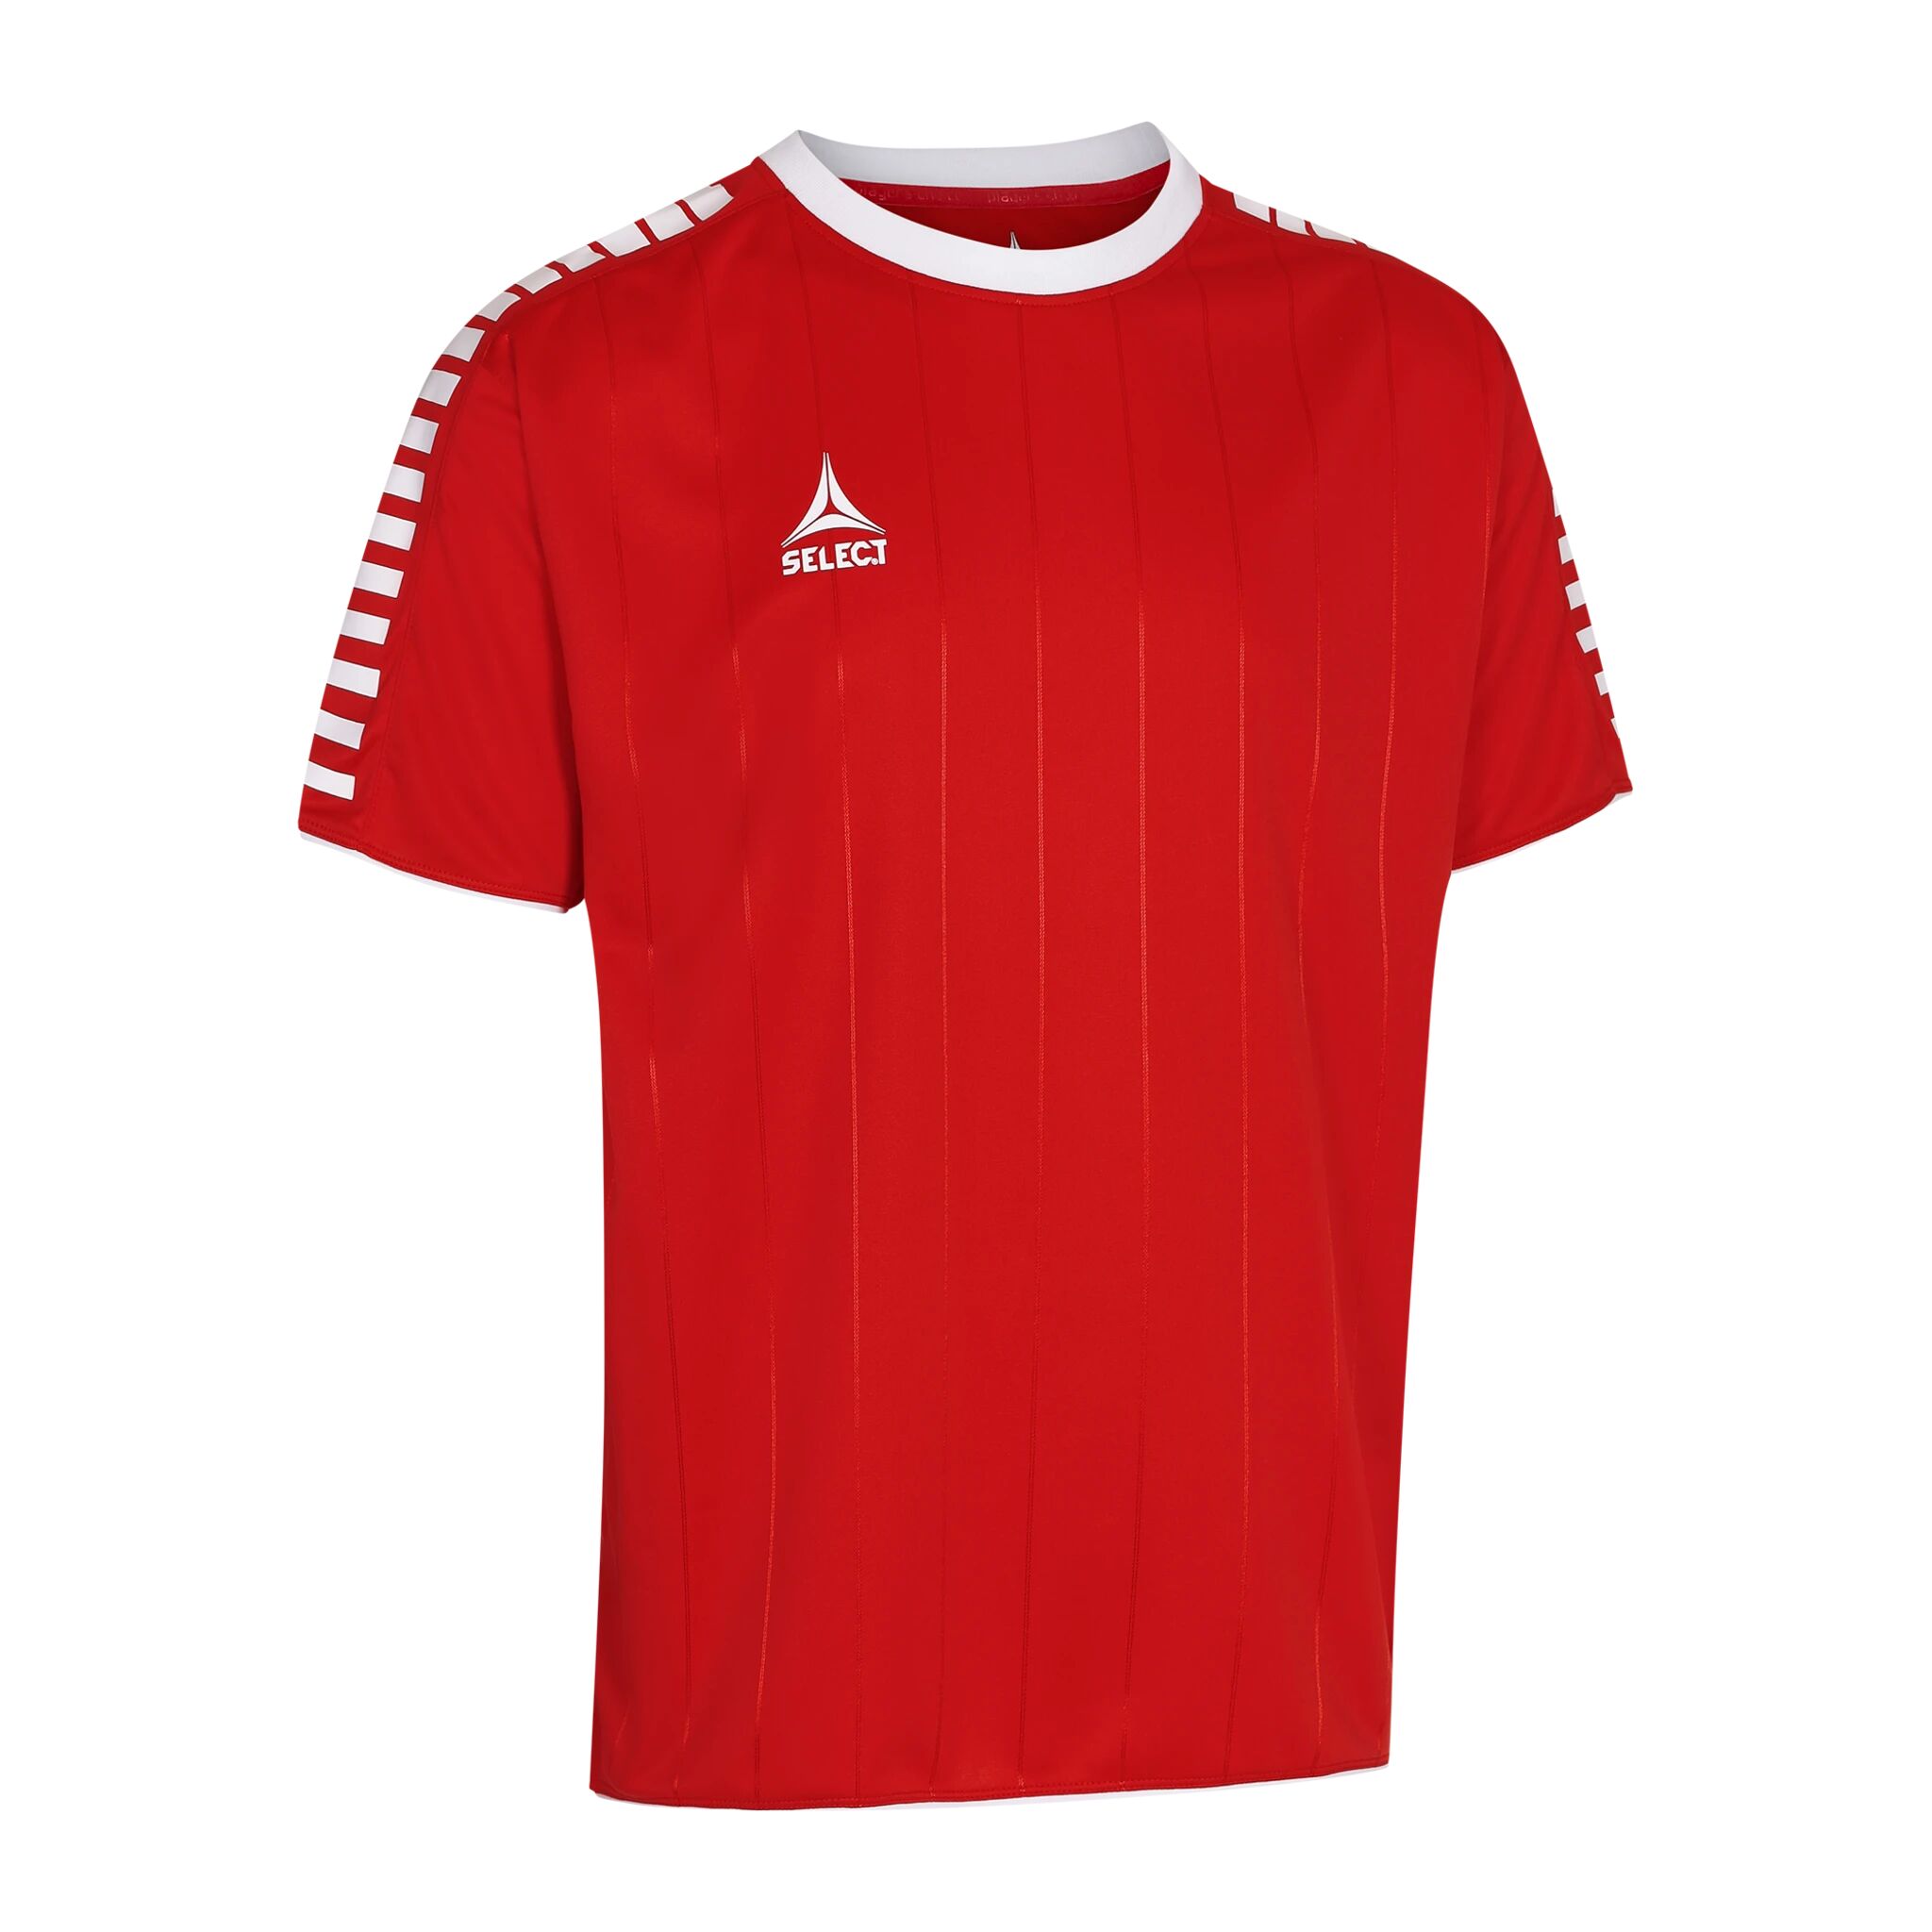 Select Player shirt S/S Argentina, fotballtrøye senior S RED